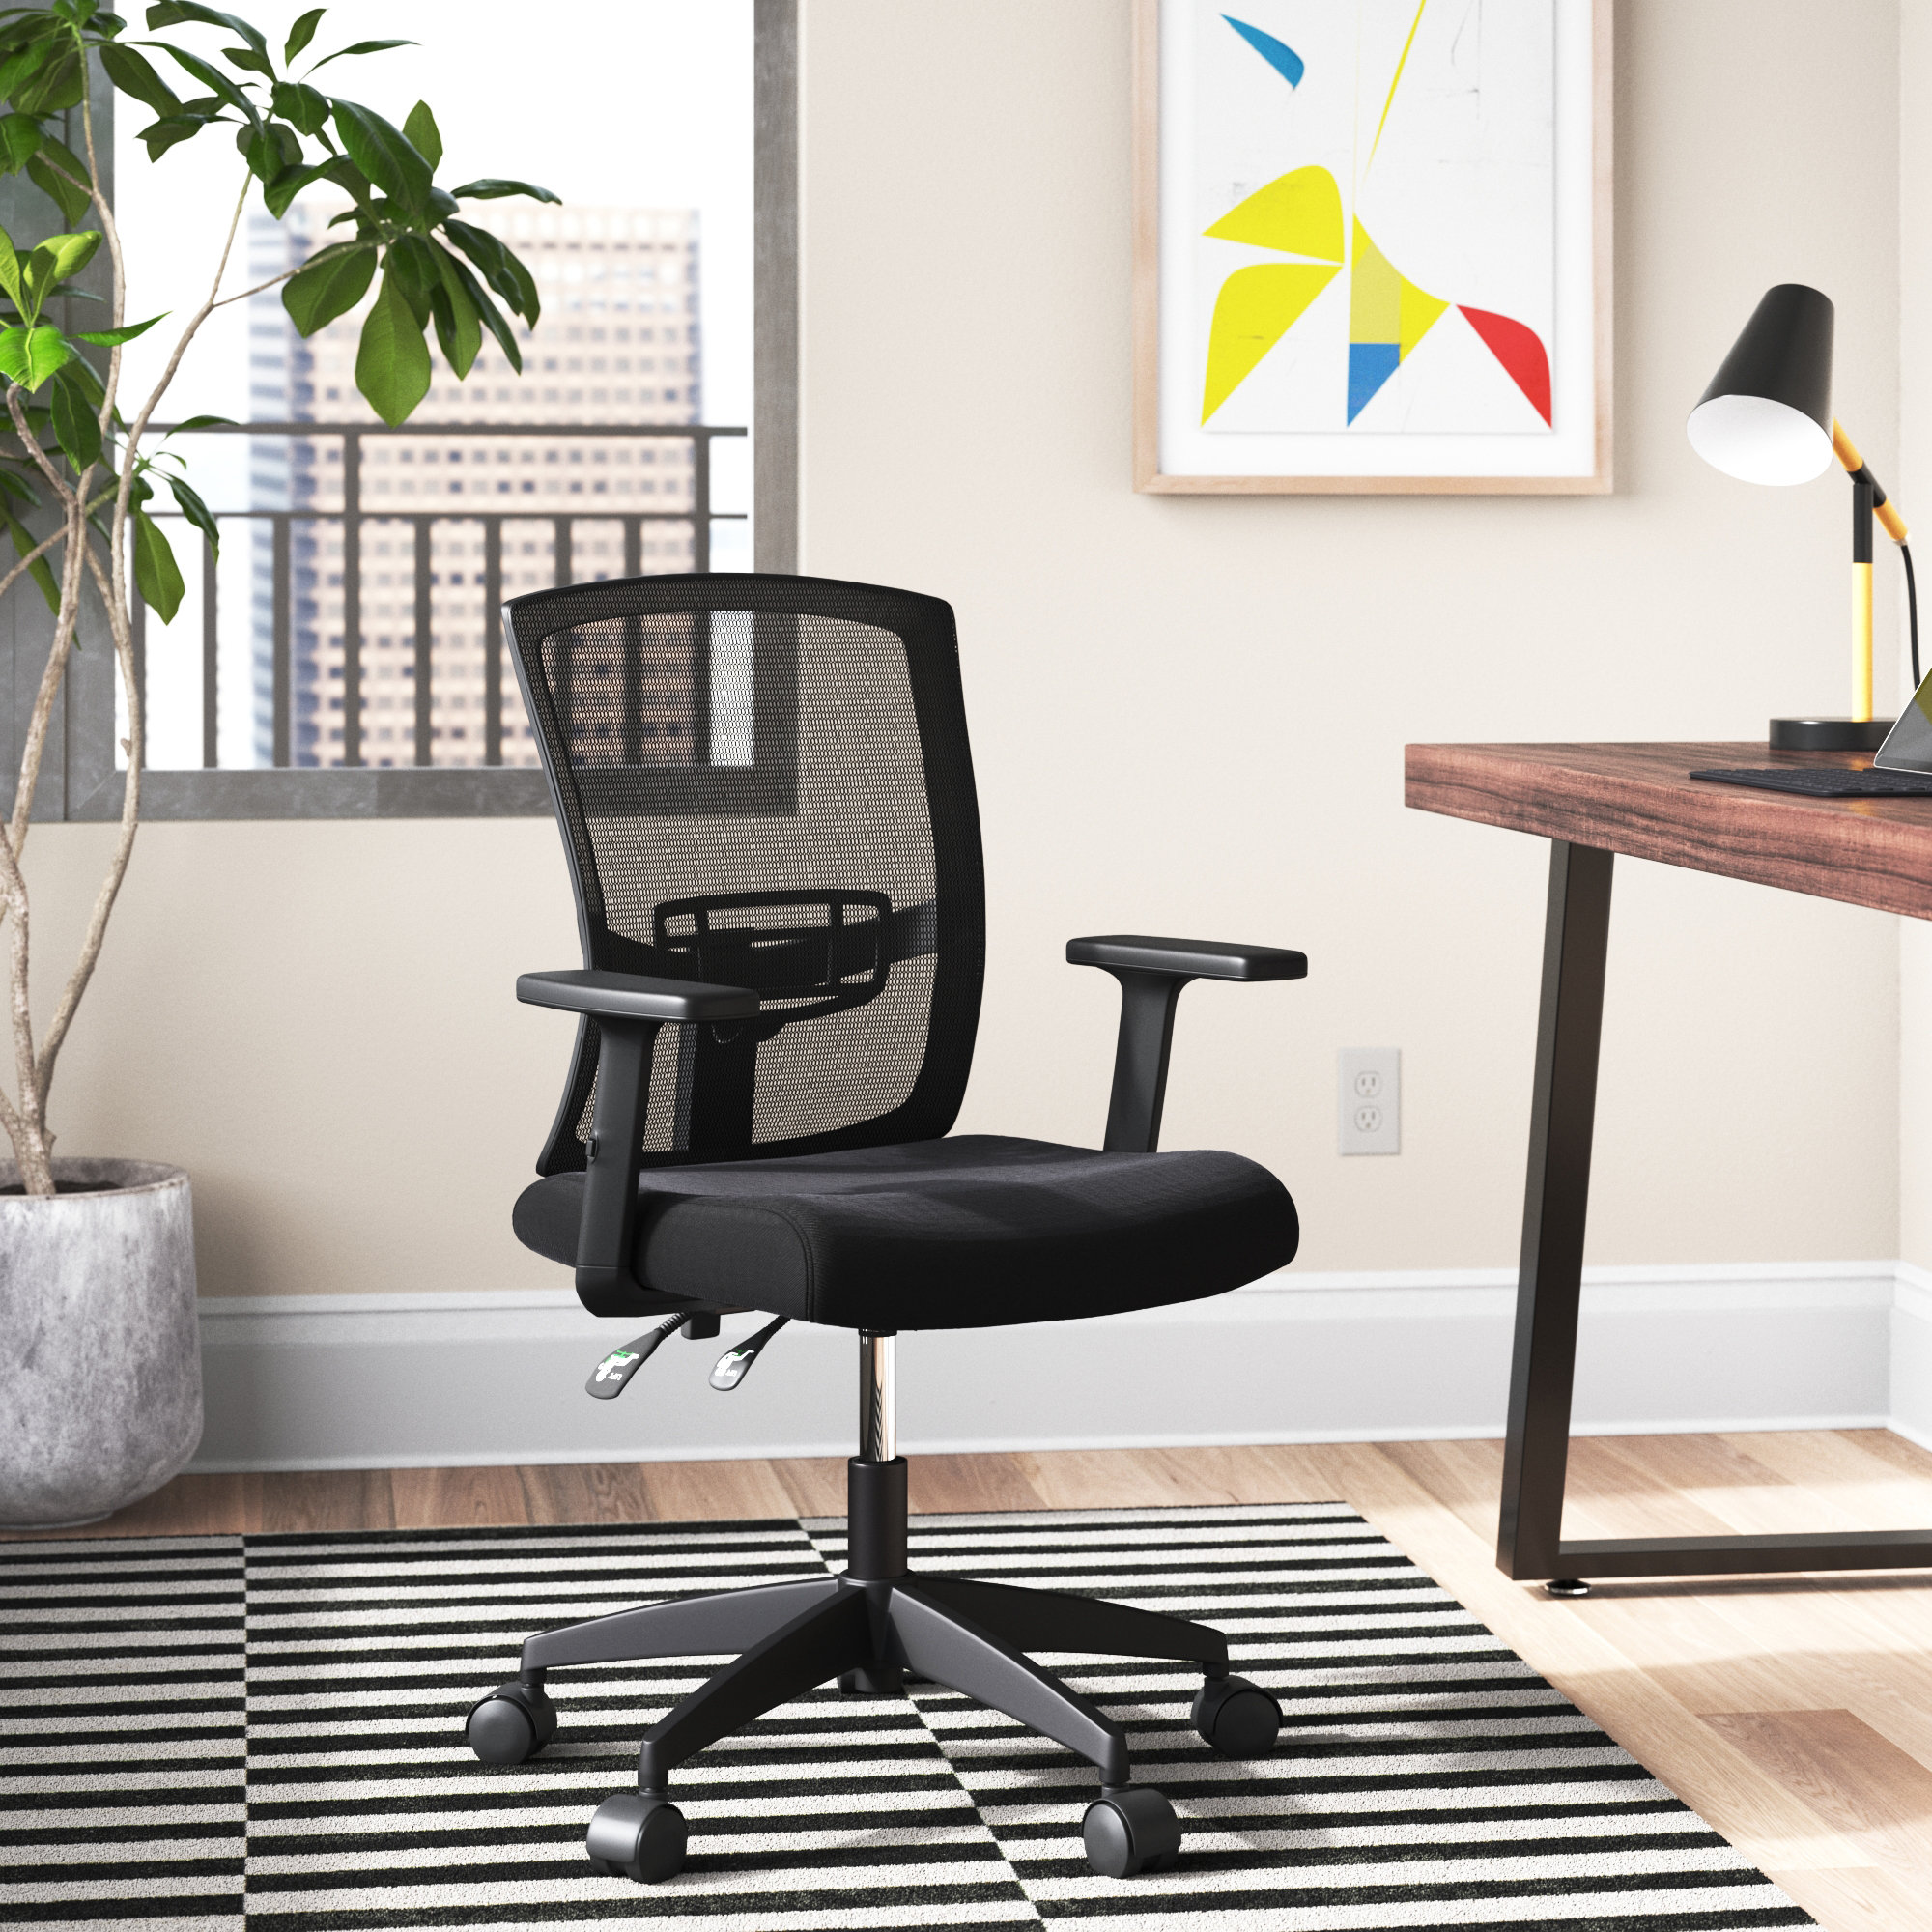 https://assets.wfcdn.com/im/29140746/compr-r85/2147/214711646/ergonomic-task-chair-study-chair-office-chair.jpg